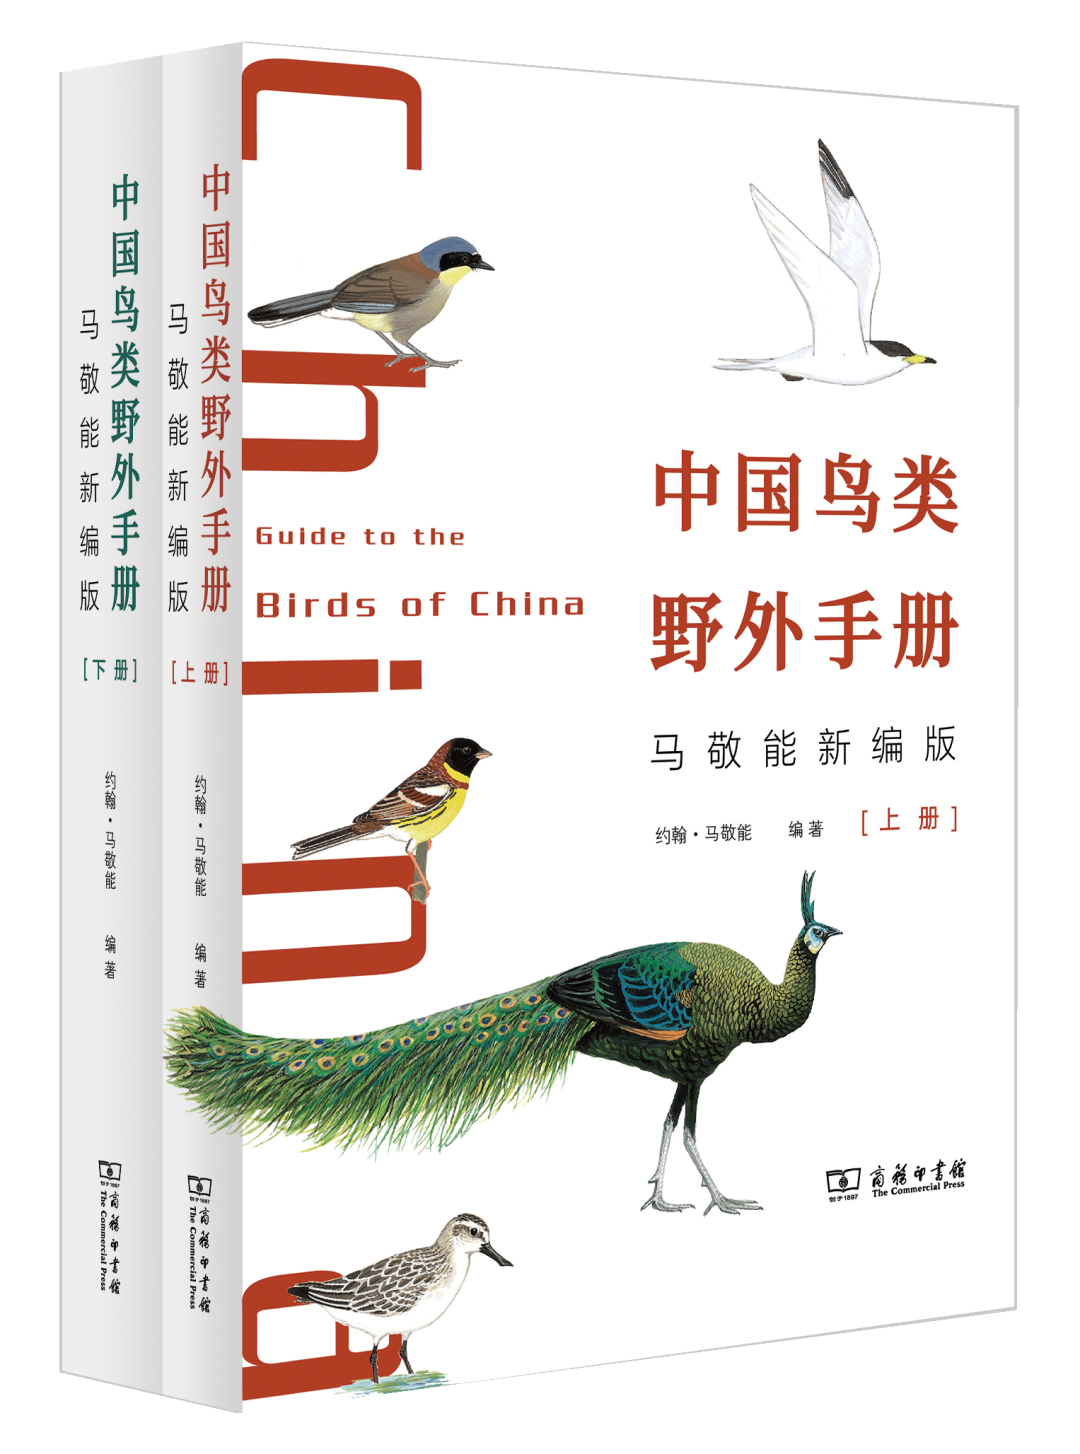 中国出版集团好书榜2022年第二期